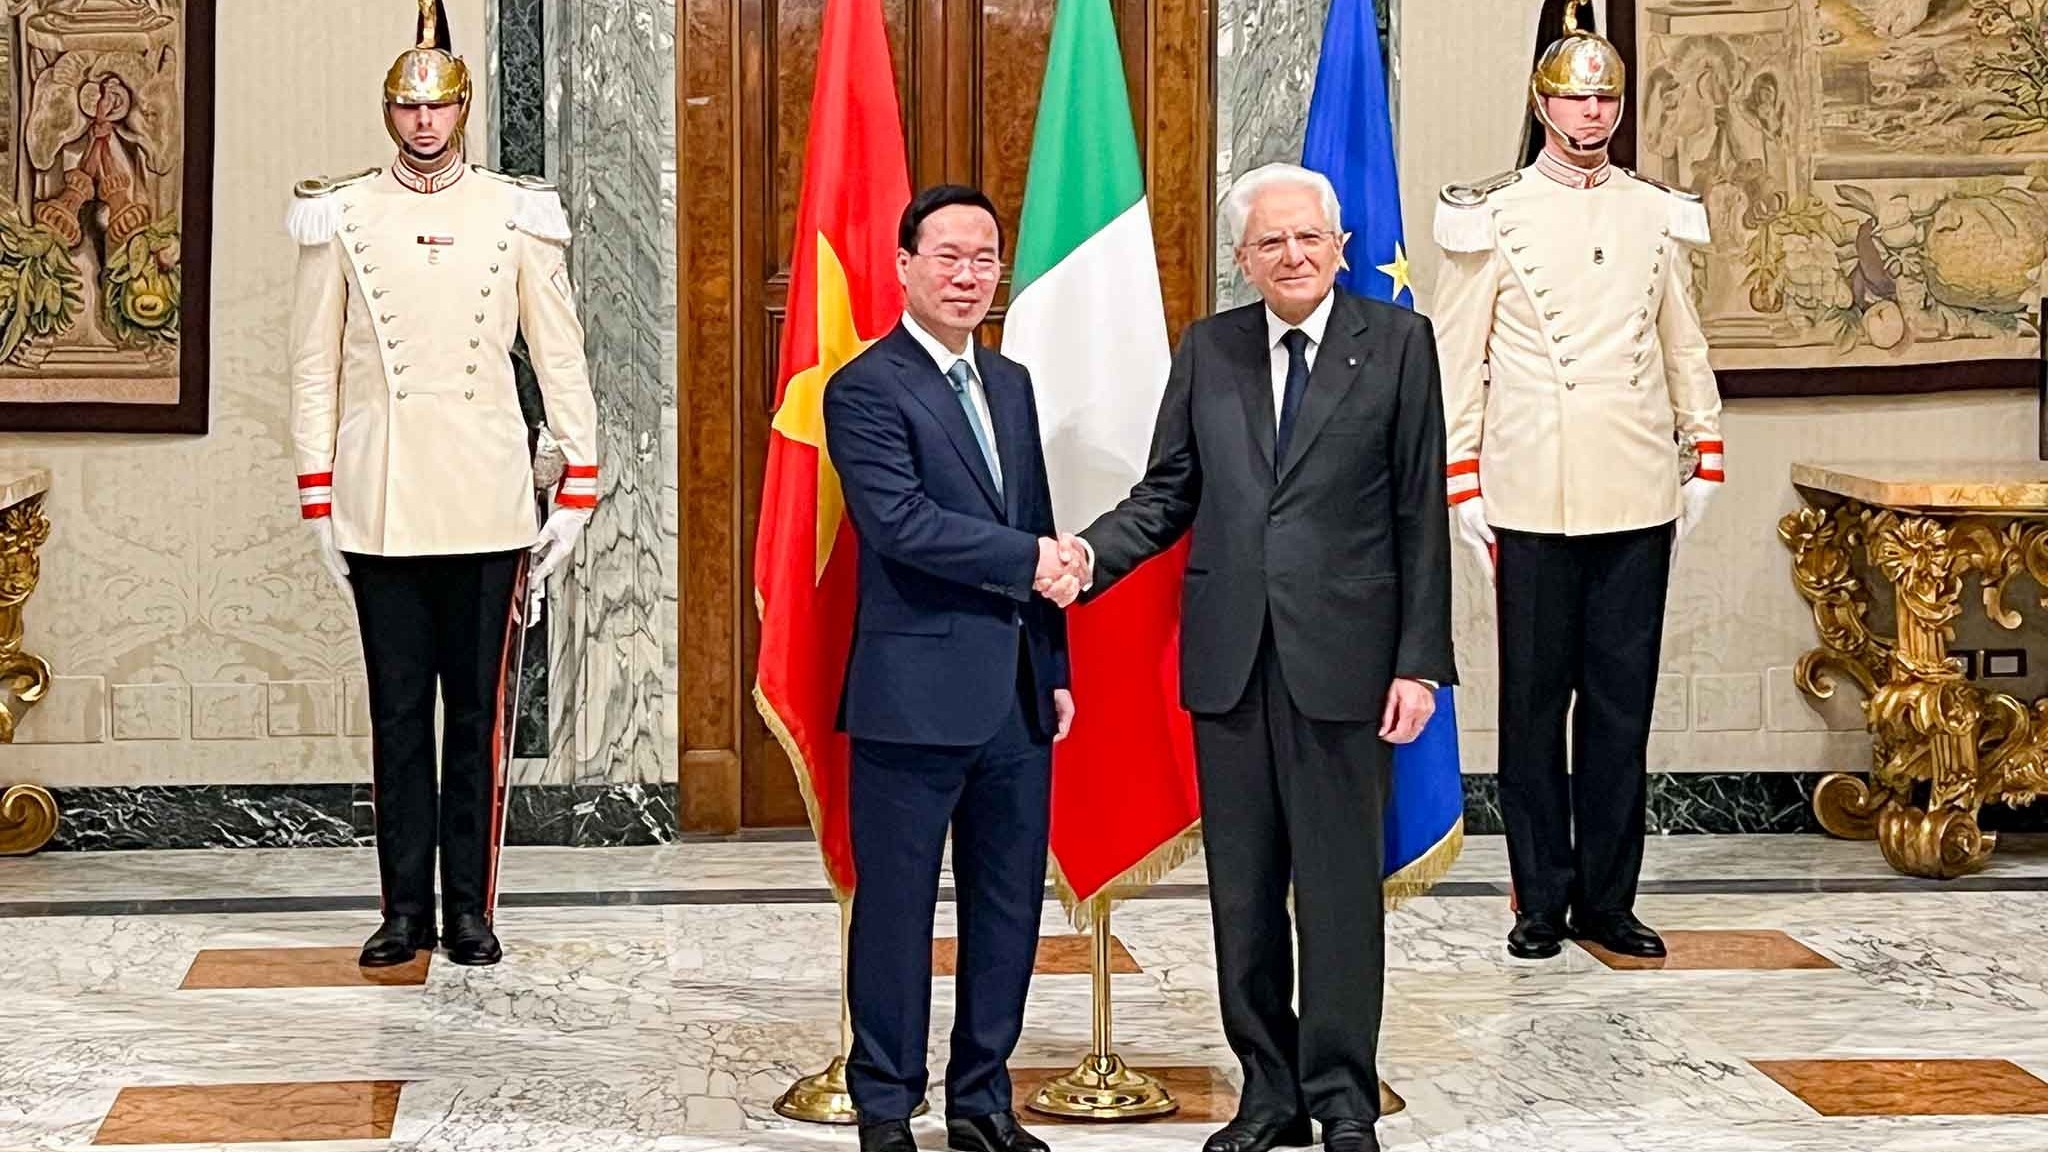 Báo chí Italy đưa tin đậm nét về chuyến thăm cấp Nhà nước của Chủ tịch nước Võ Văn Thưởng, khẳng định hợp tác song phương chặt chẽ, hiệu quả